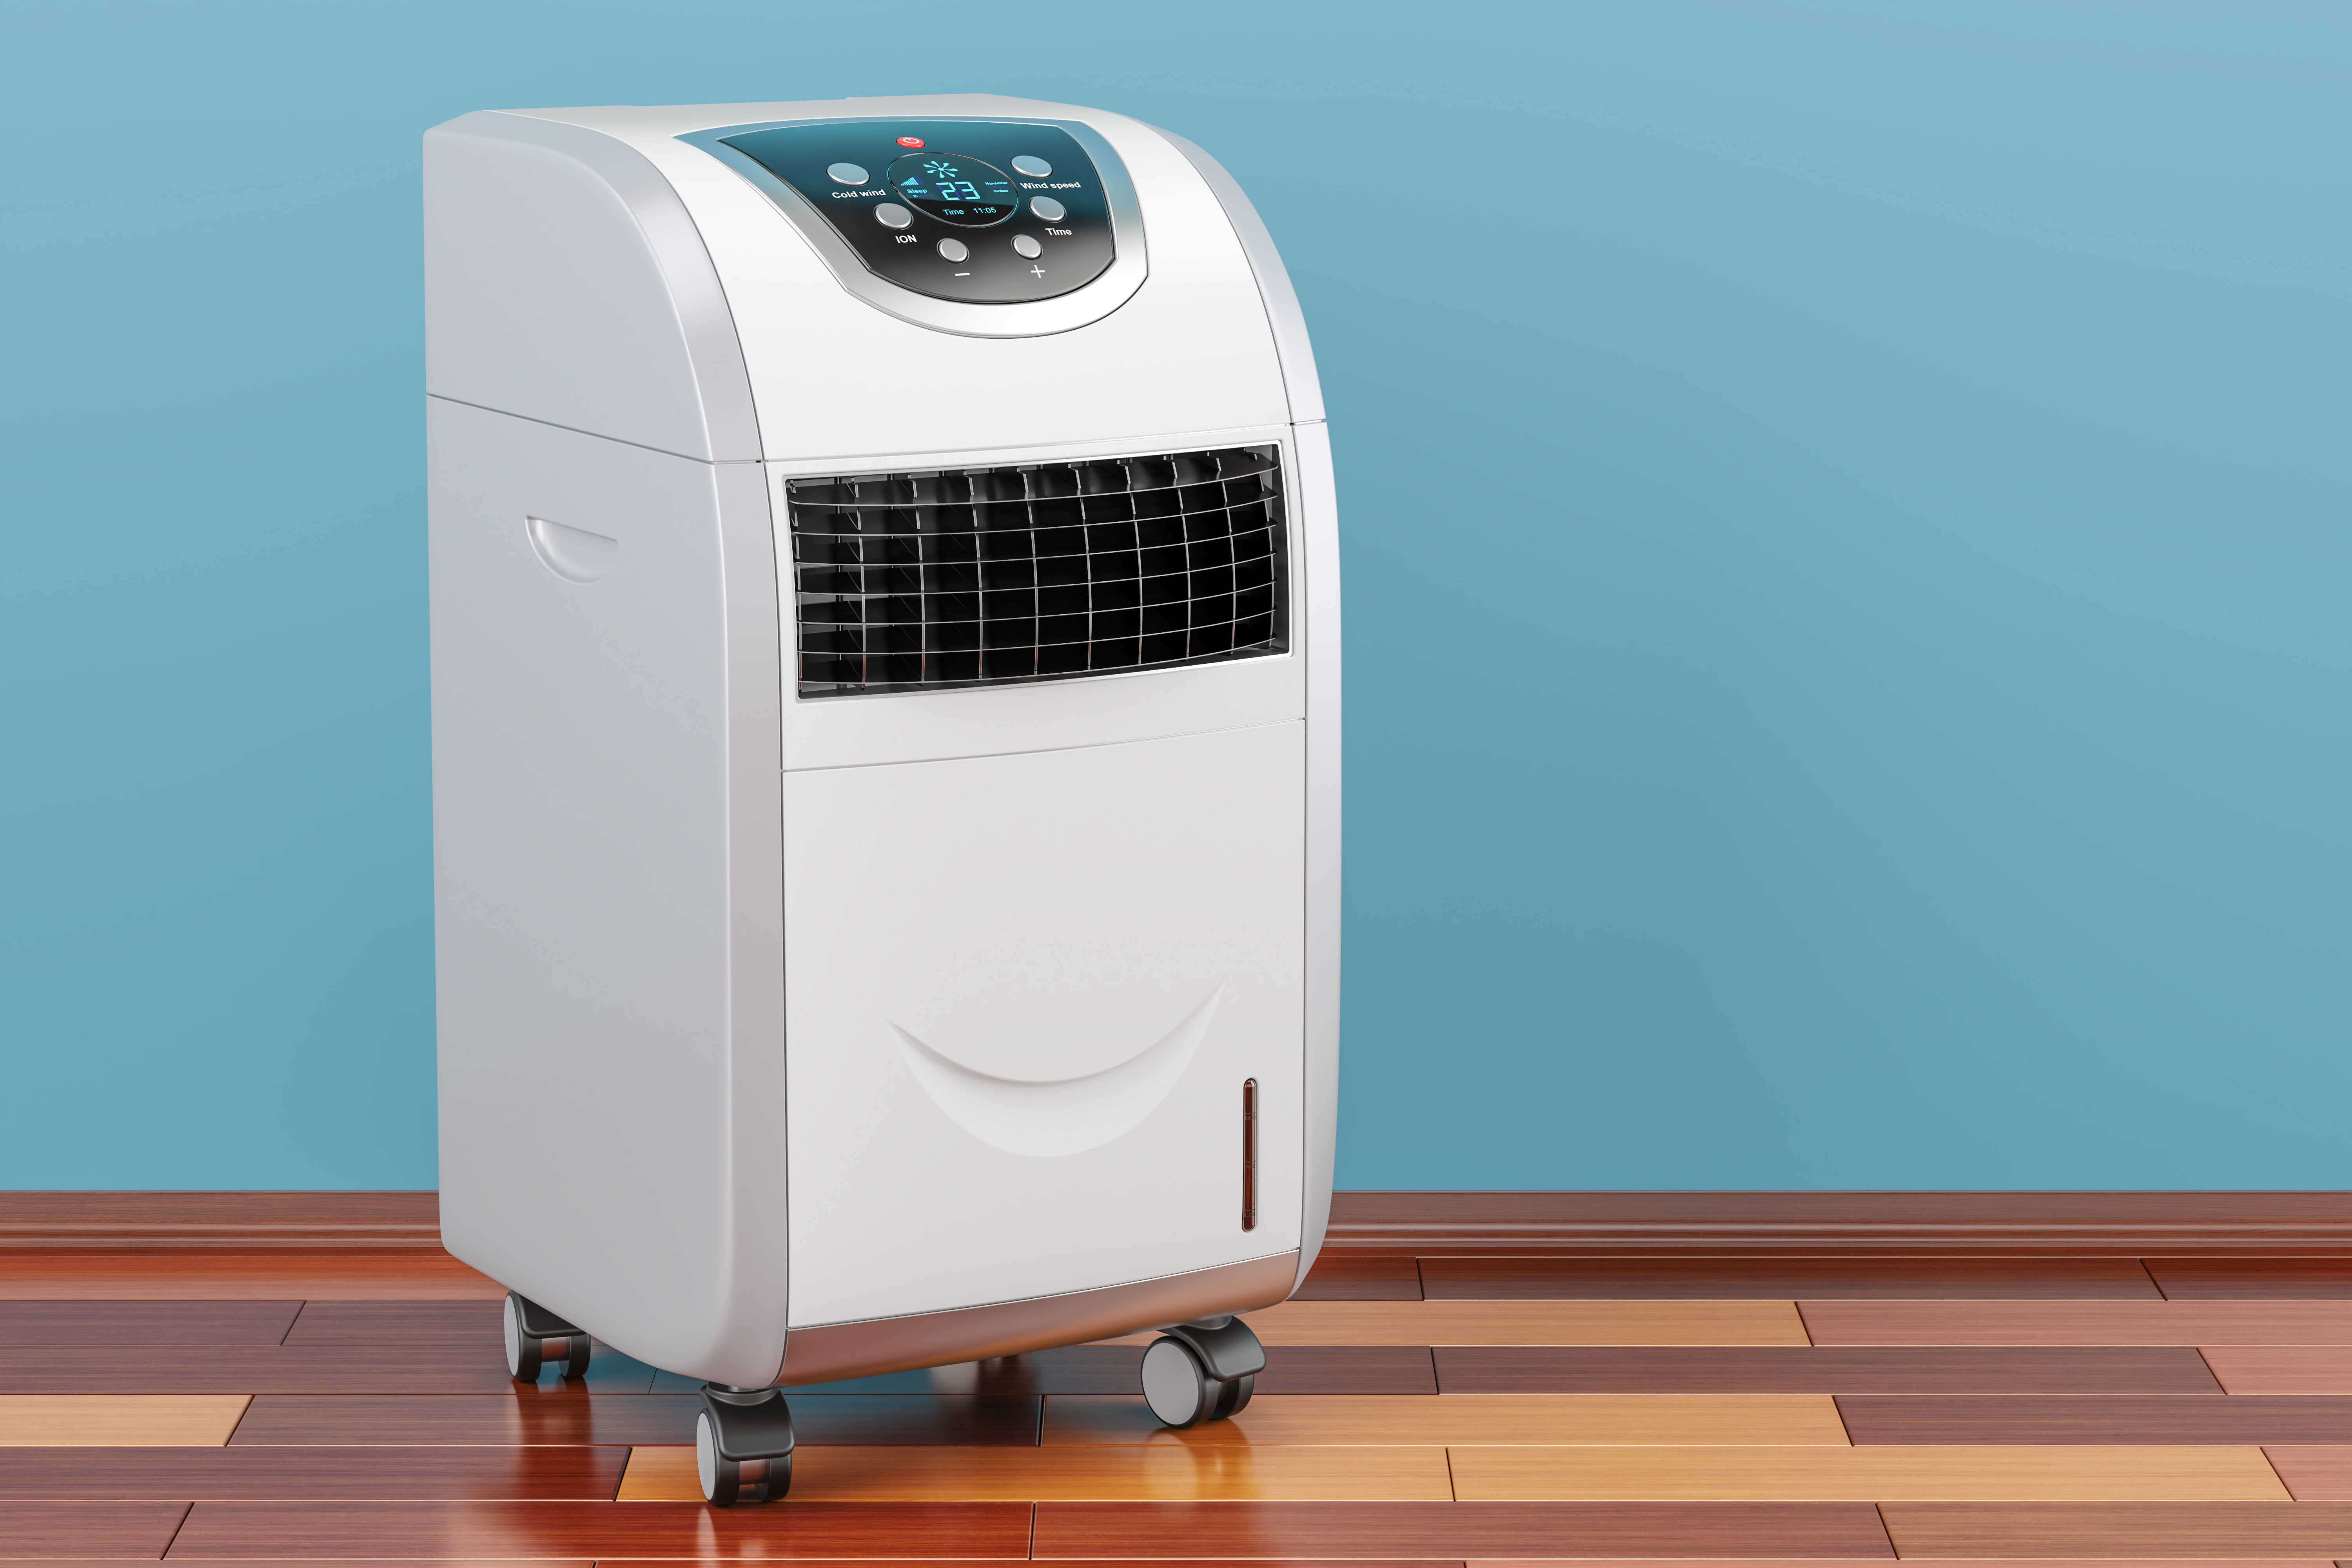 Quelles sont les meilleures offres de climatiseurs mobiles ? © alexlmx, Adobe Stock